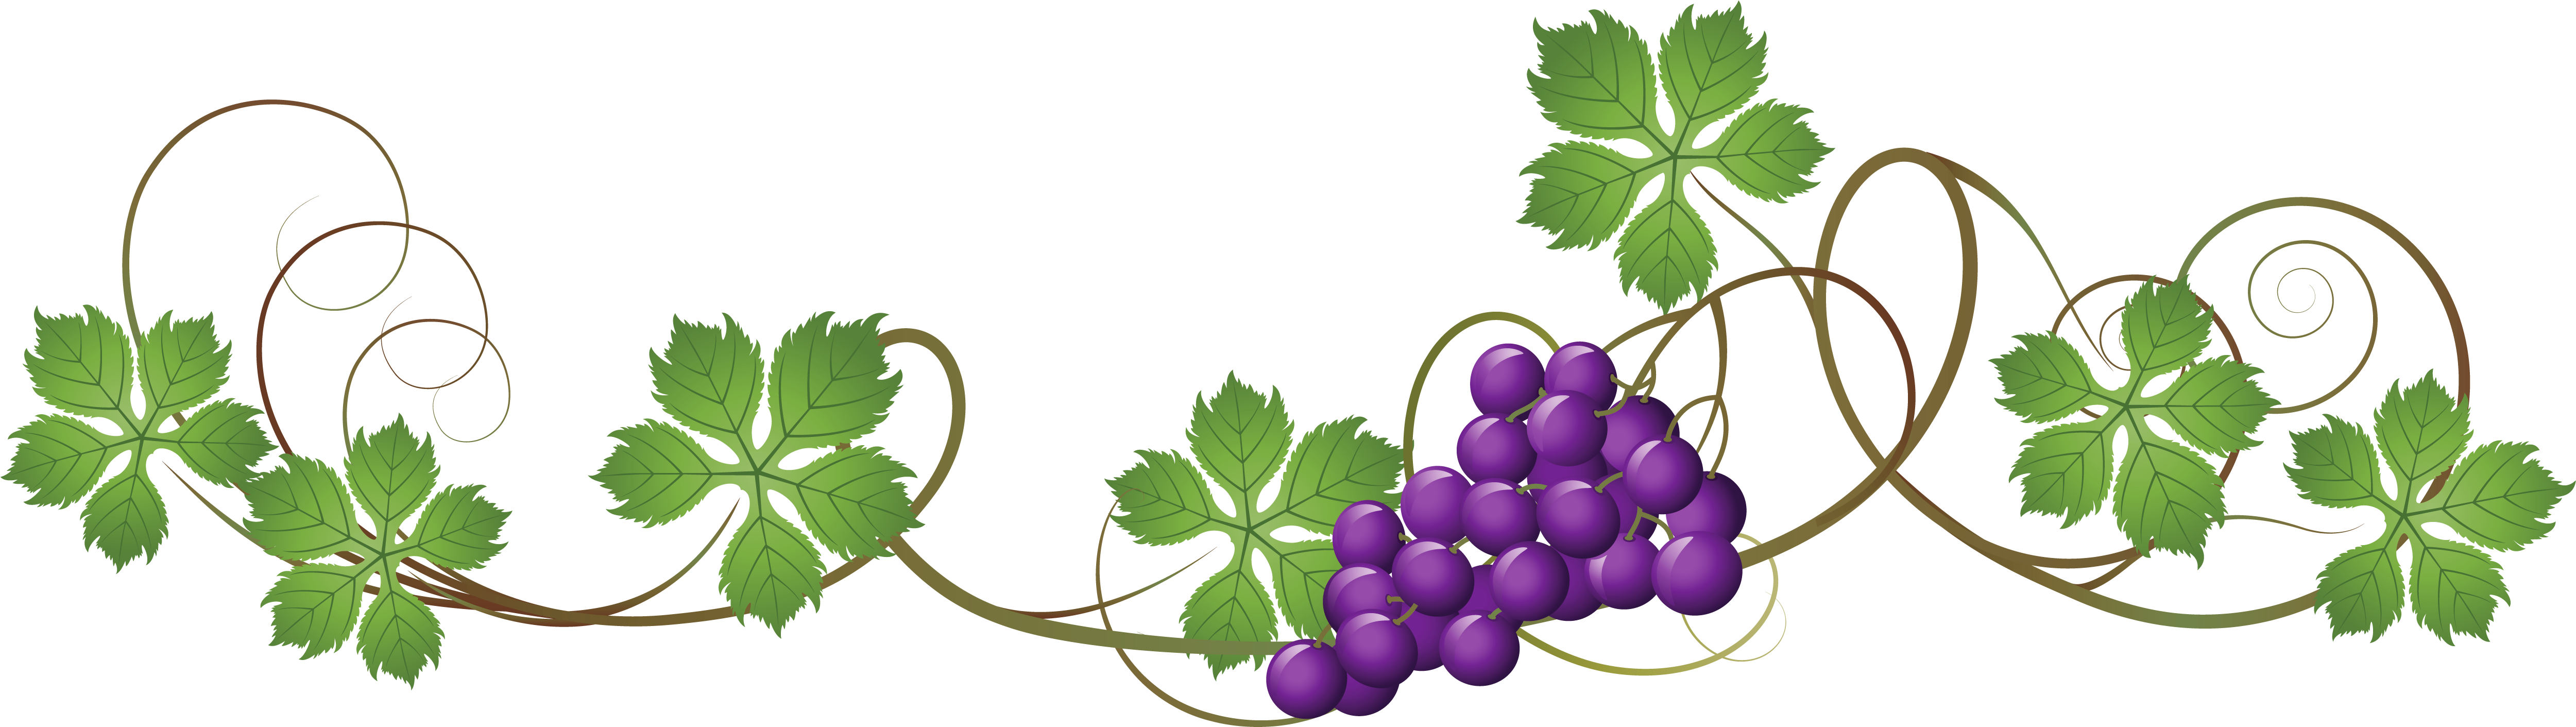 grapes clipart grape plant